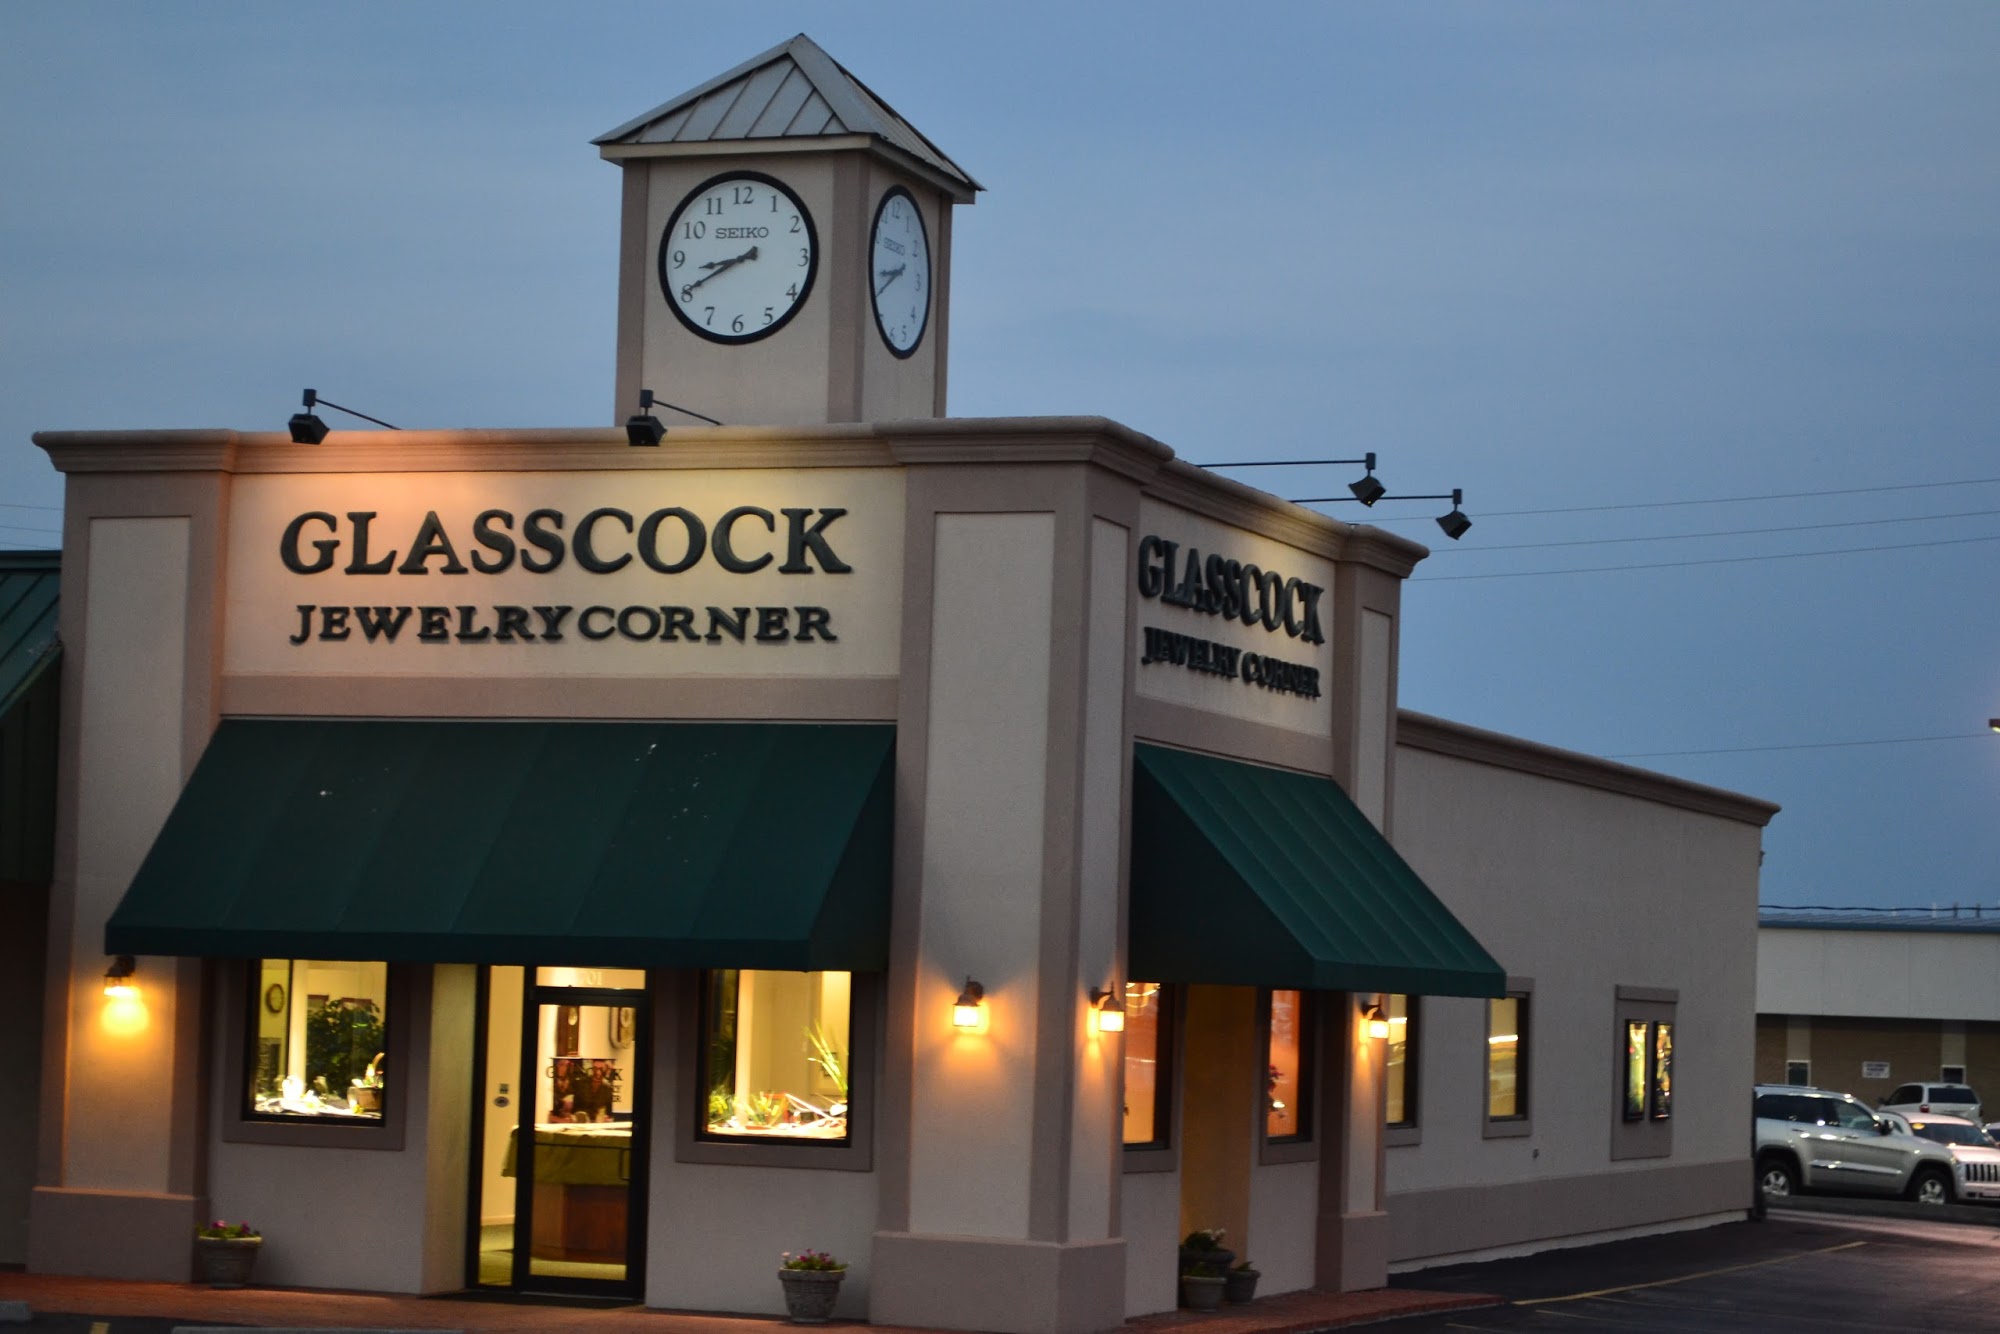 Glasscock Jewelry Corner